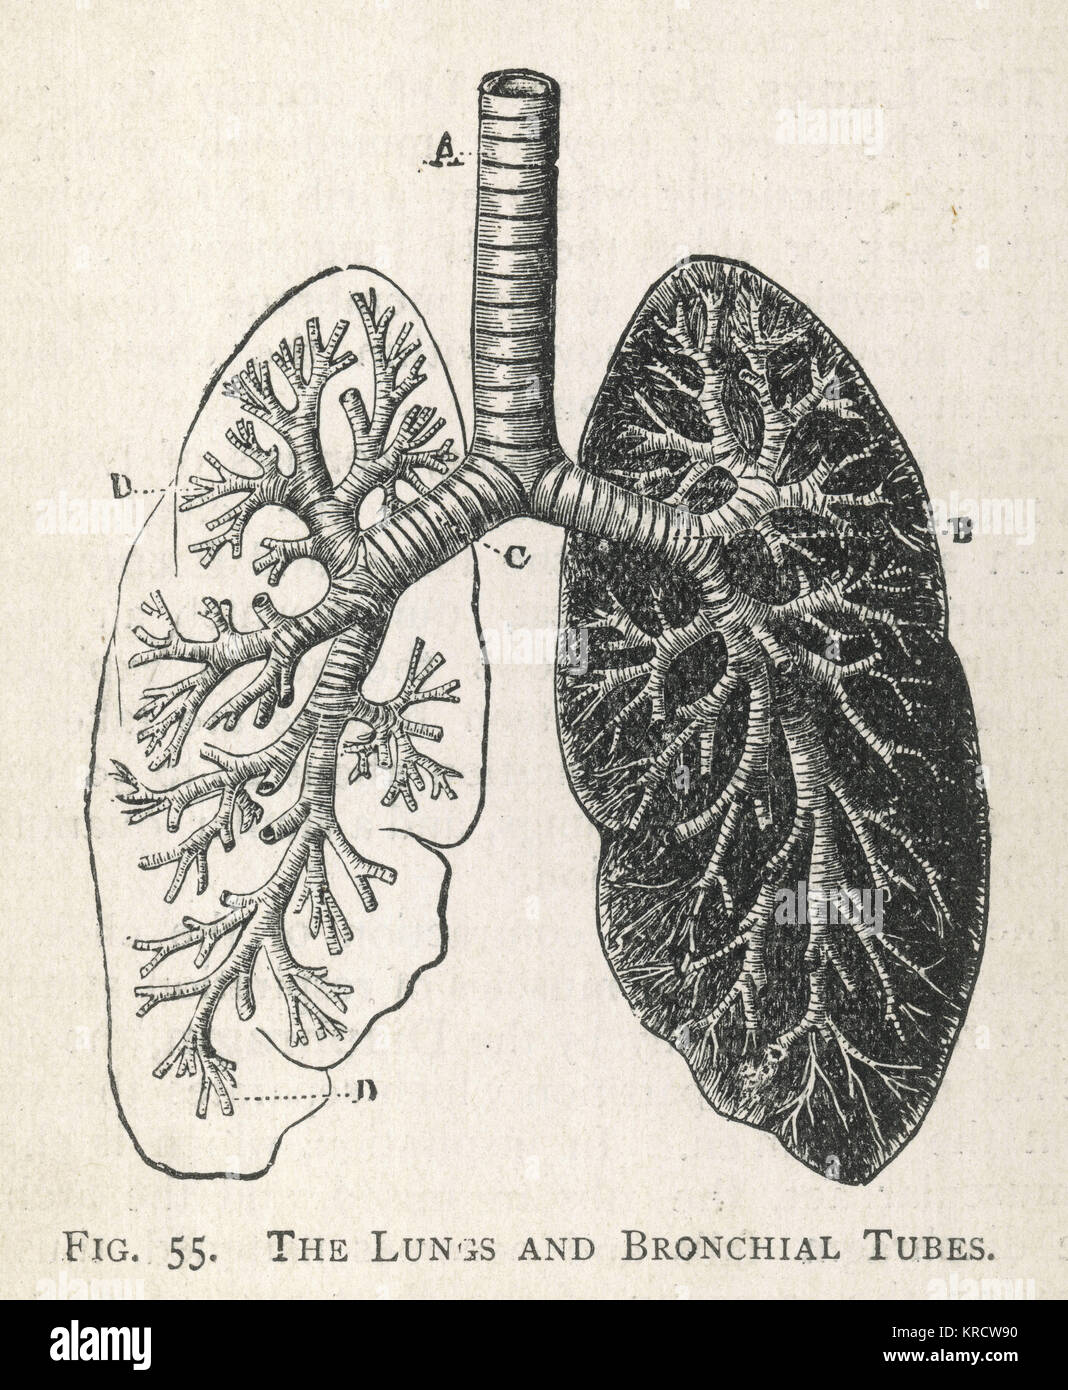 Un diagramme des poumons et des bronches, avec une section de la trachée. Date : 1908 Banque D'Images